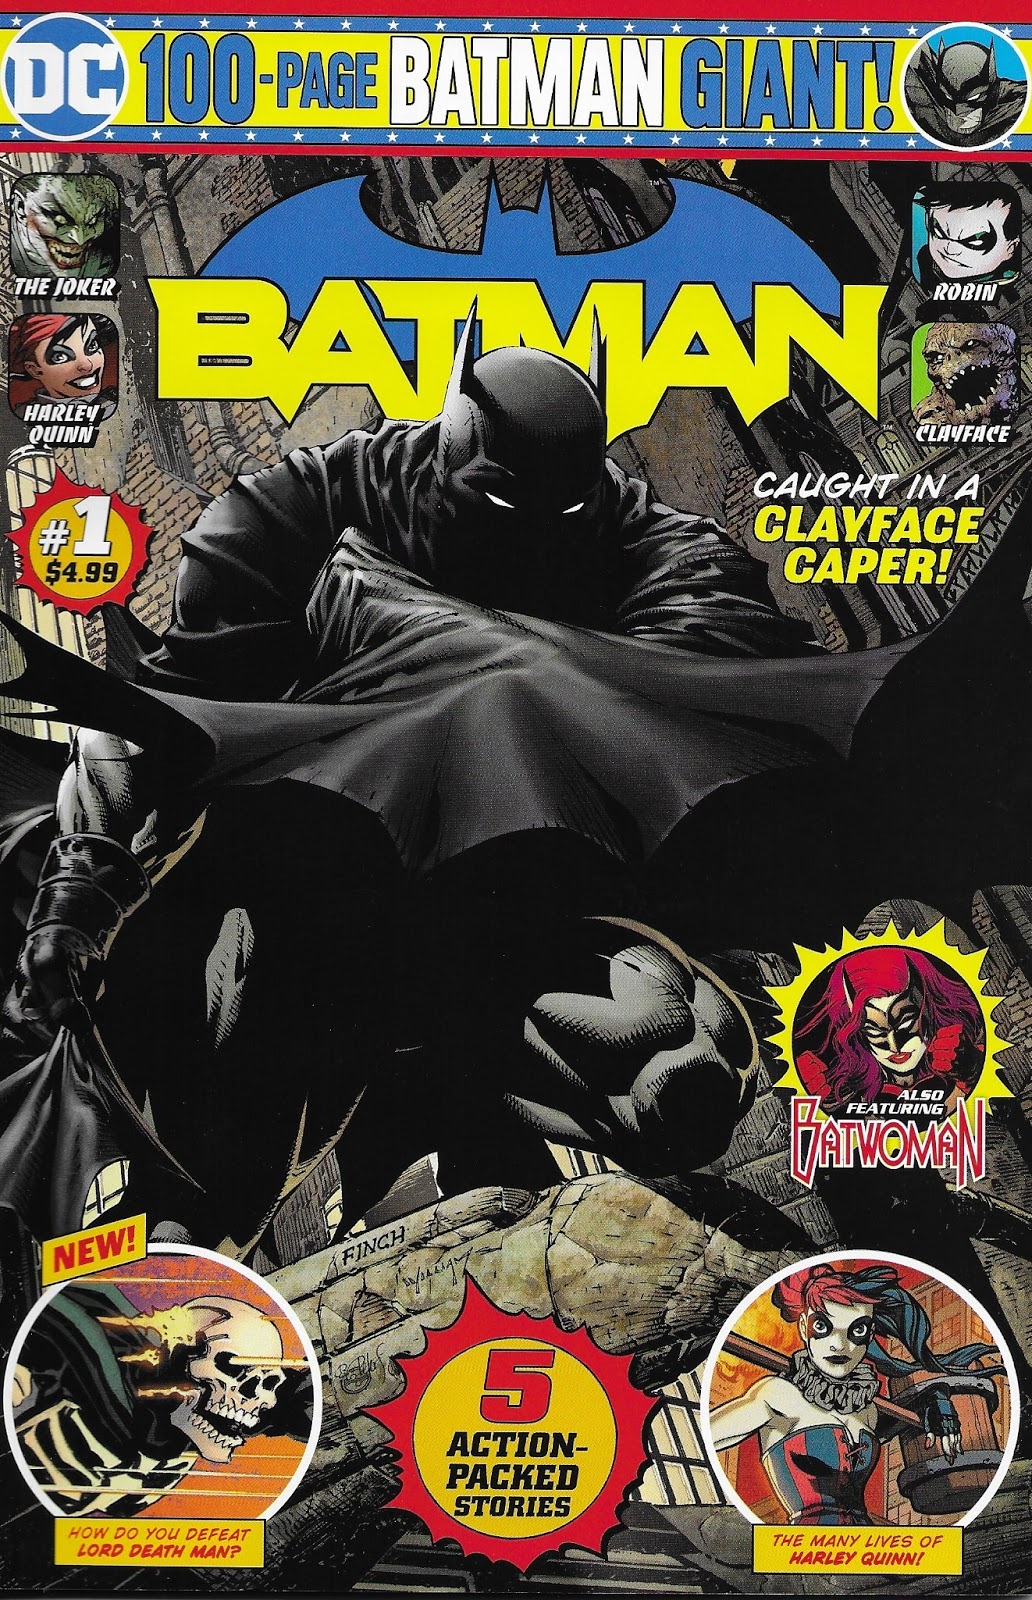 Weird Science DC Comics: Batman Giant #1 Review